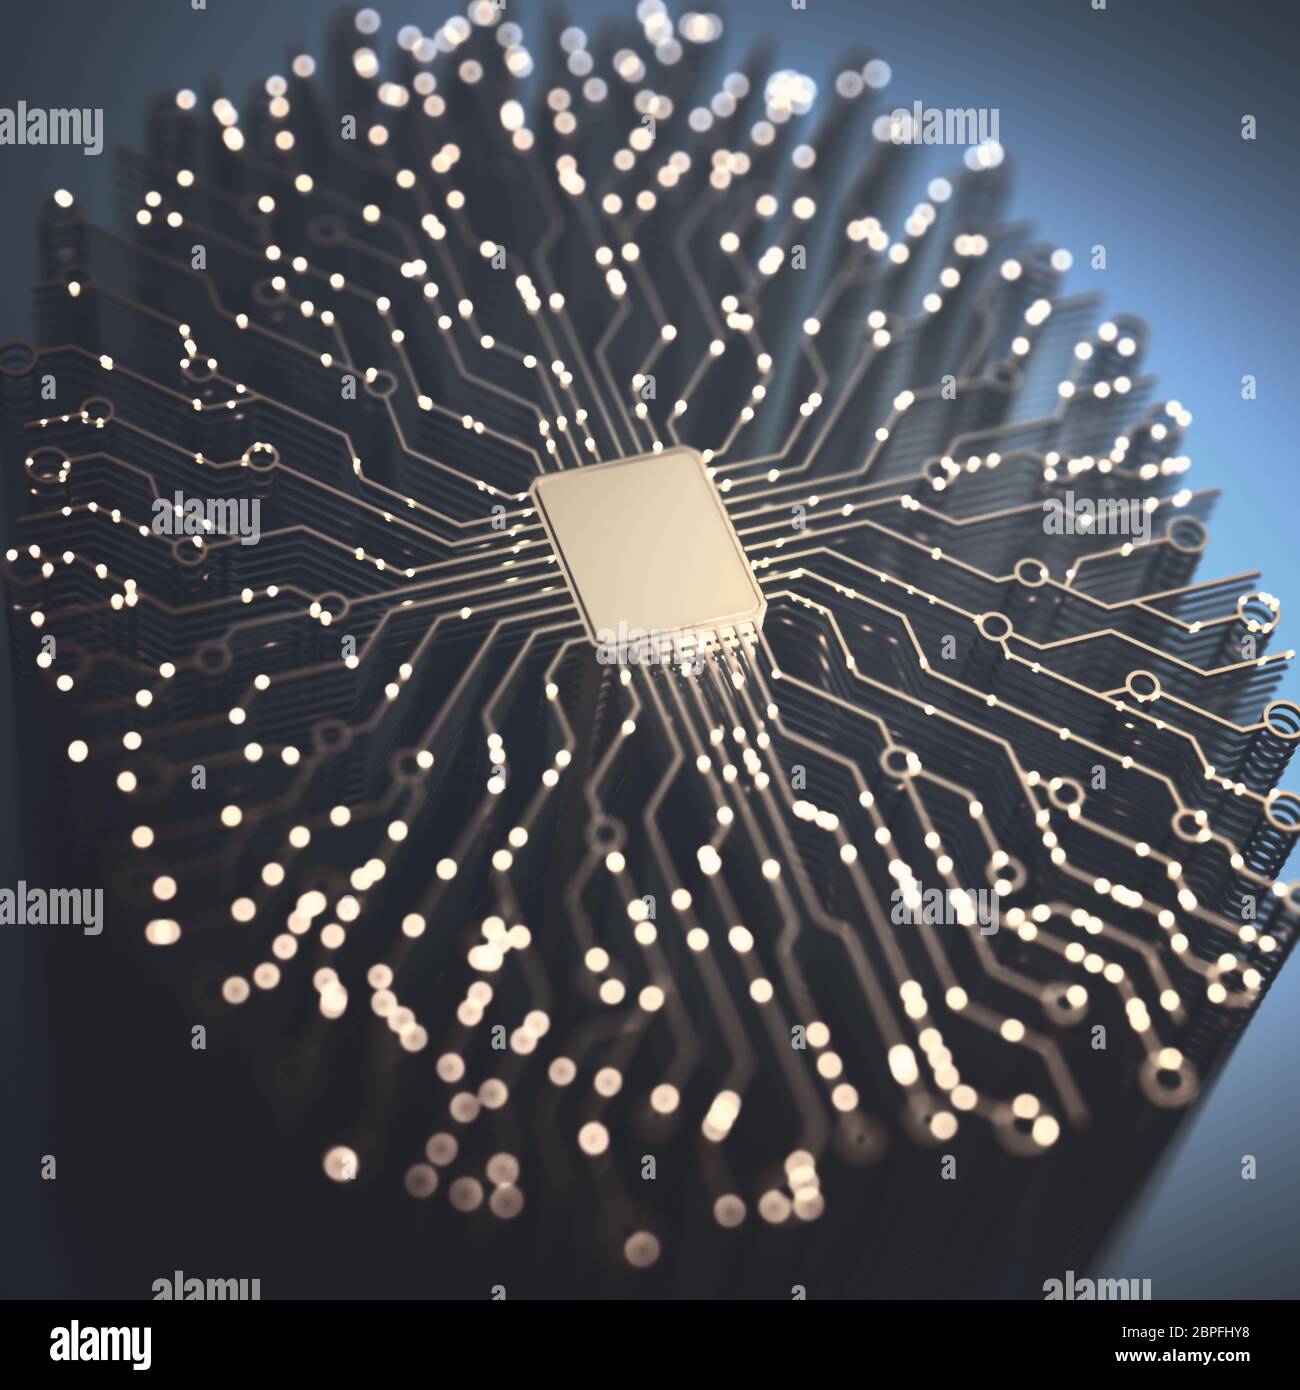 Künstliche Intelligenz. Microchip und Gehirn förmige Verbindungen. Elektrische Impulse, binäre Codes, die Aktivität des Gehirns. 3D-Darstellung. Stockfoto